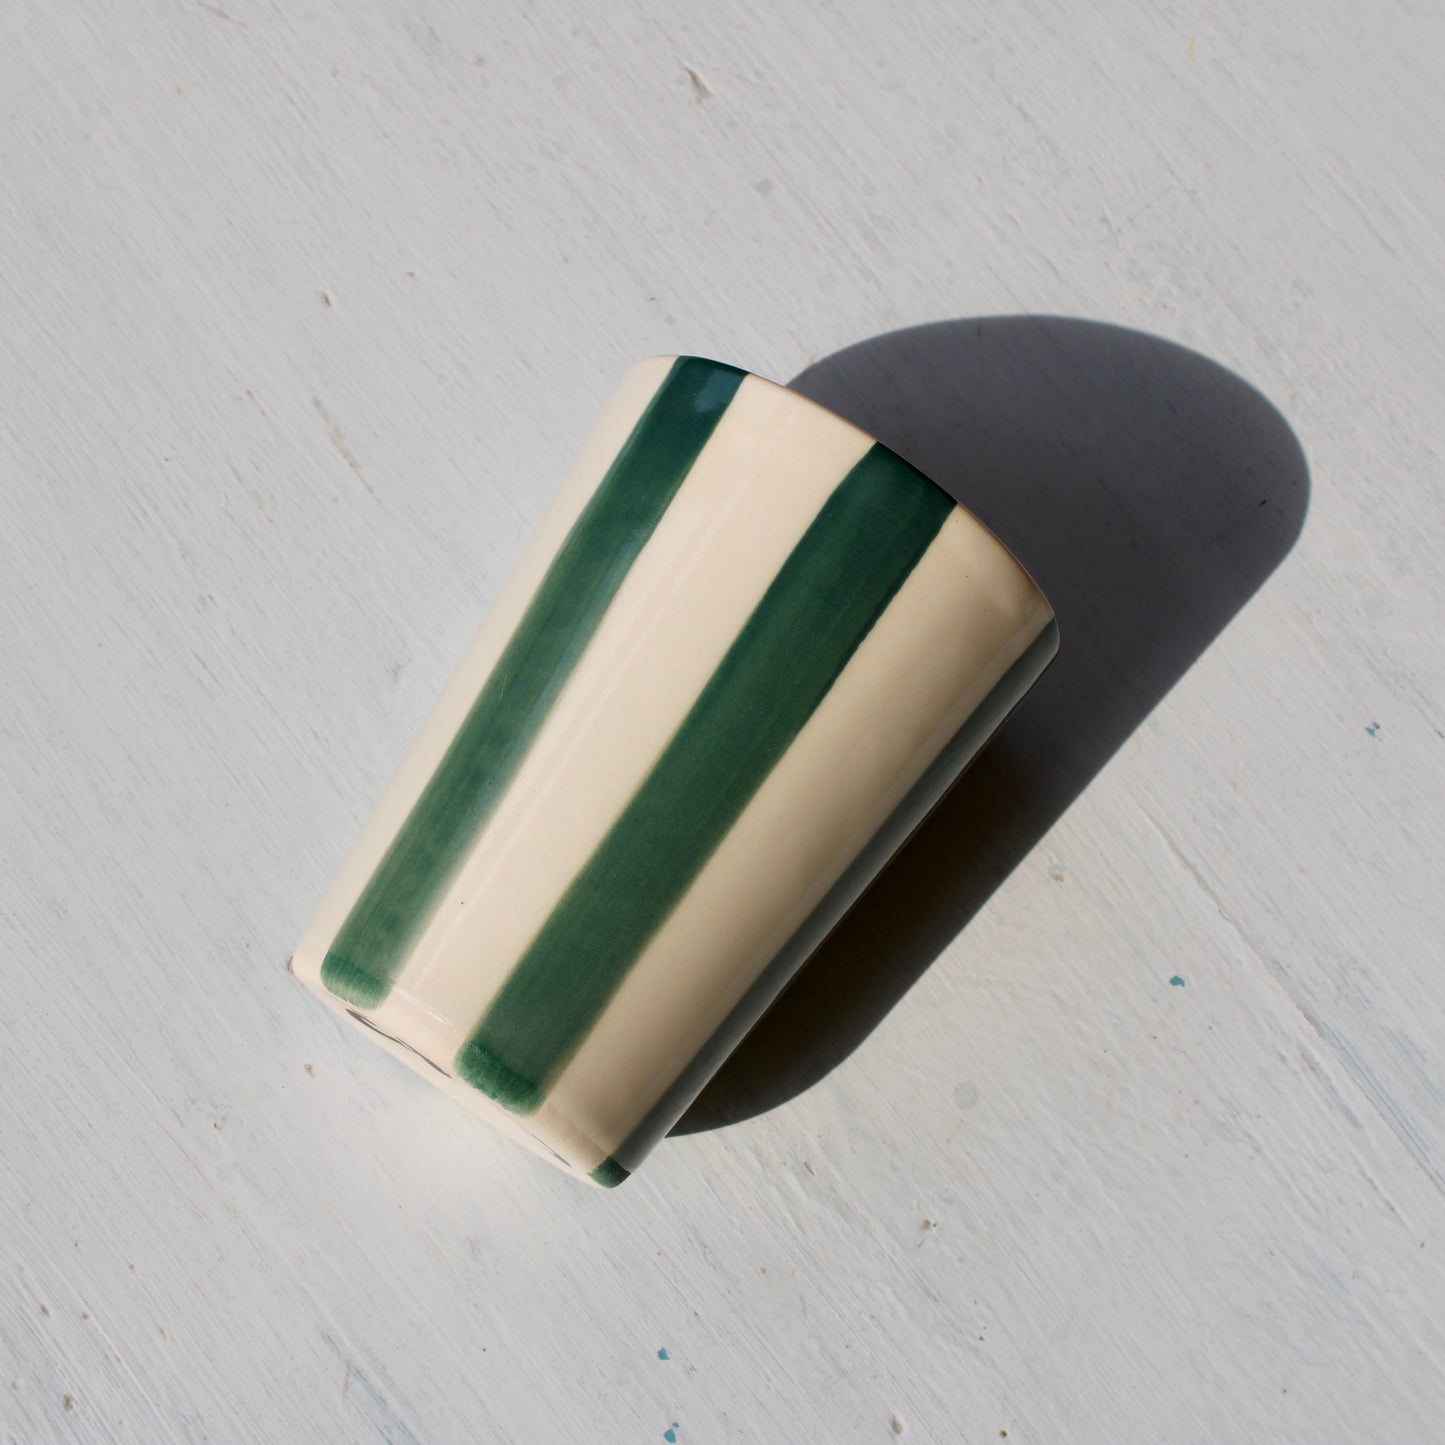 Striped Ceramic Cup - Green